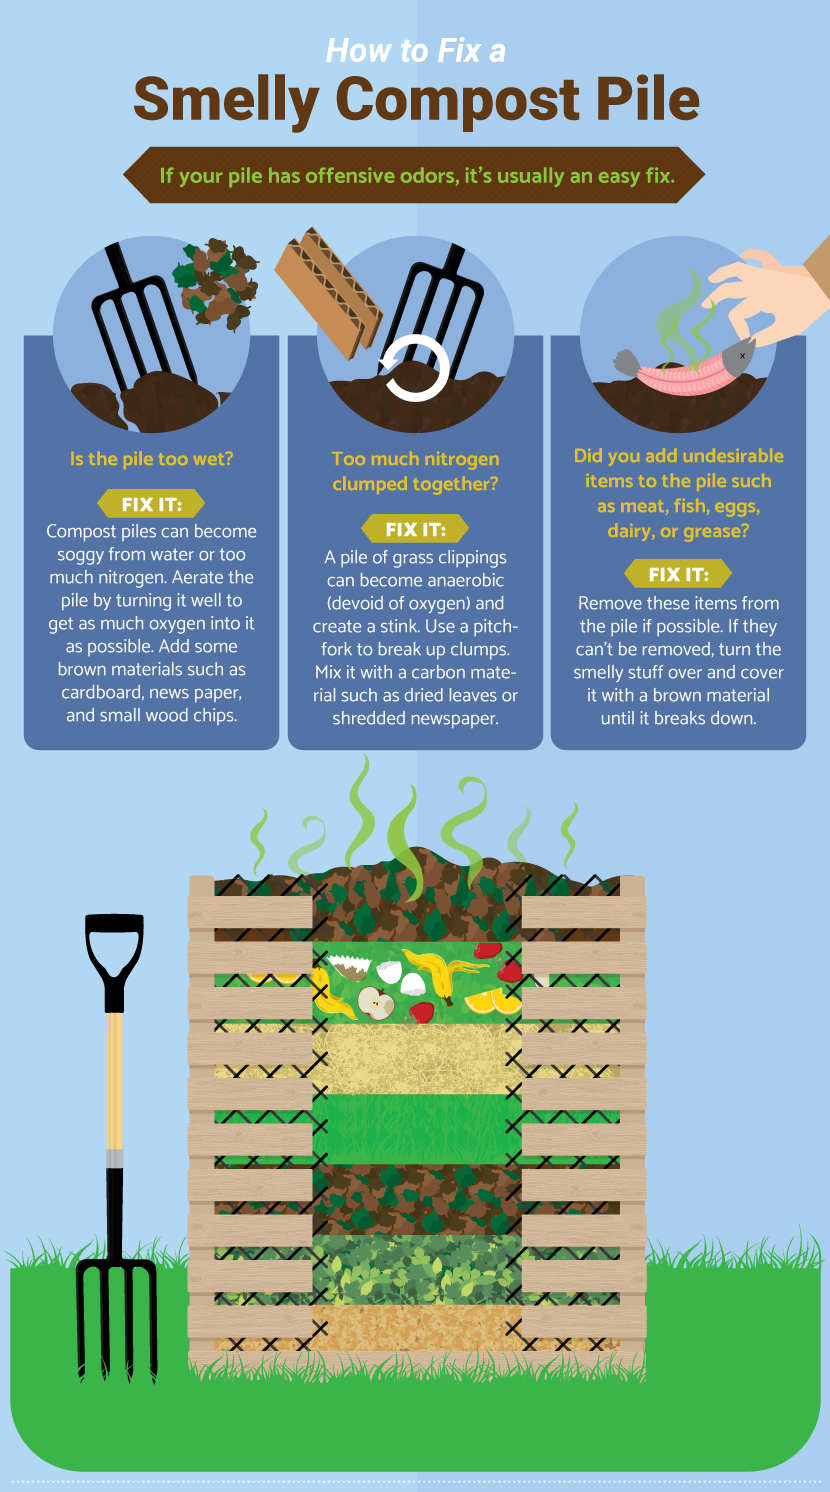 top gardening tips